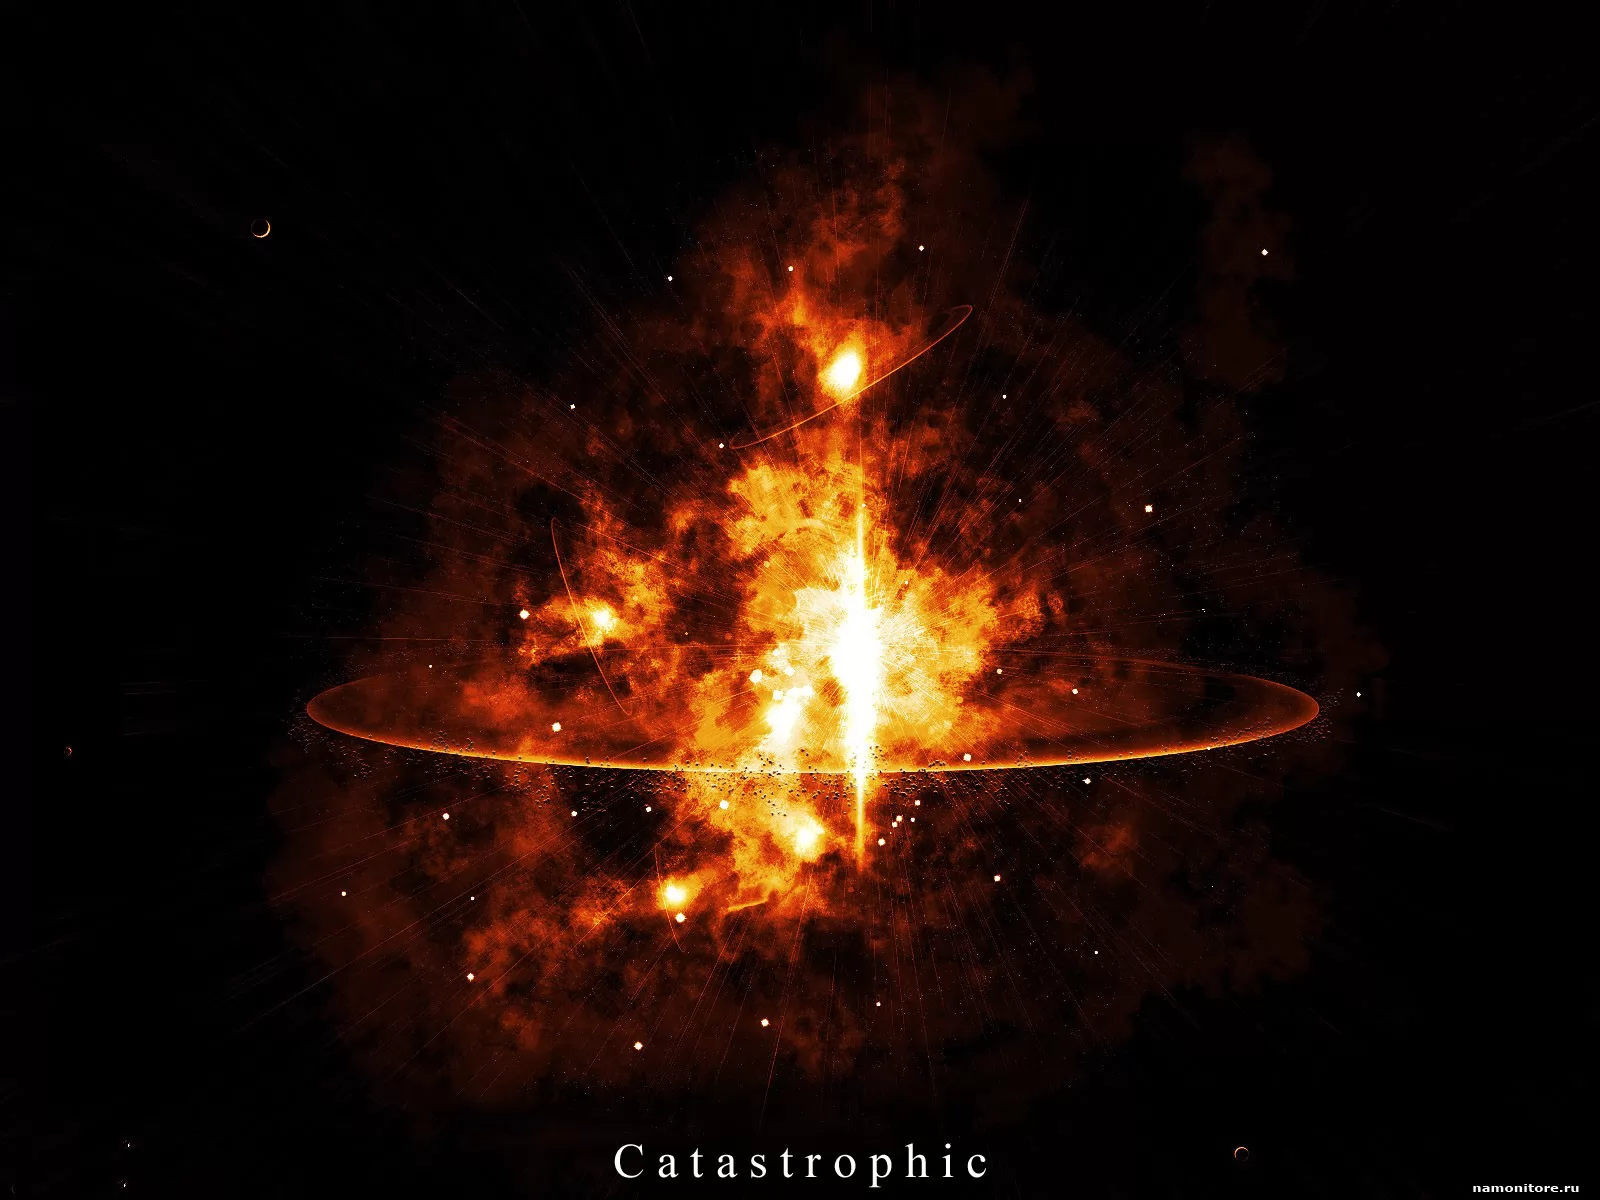 Catastrophic,  